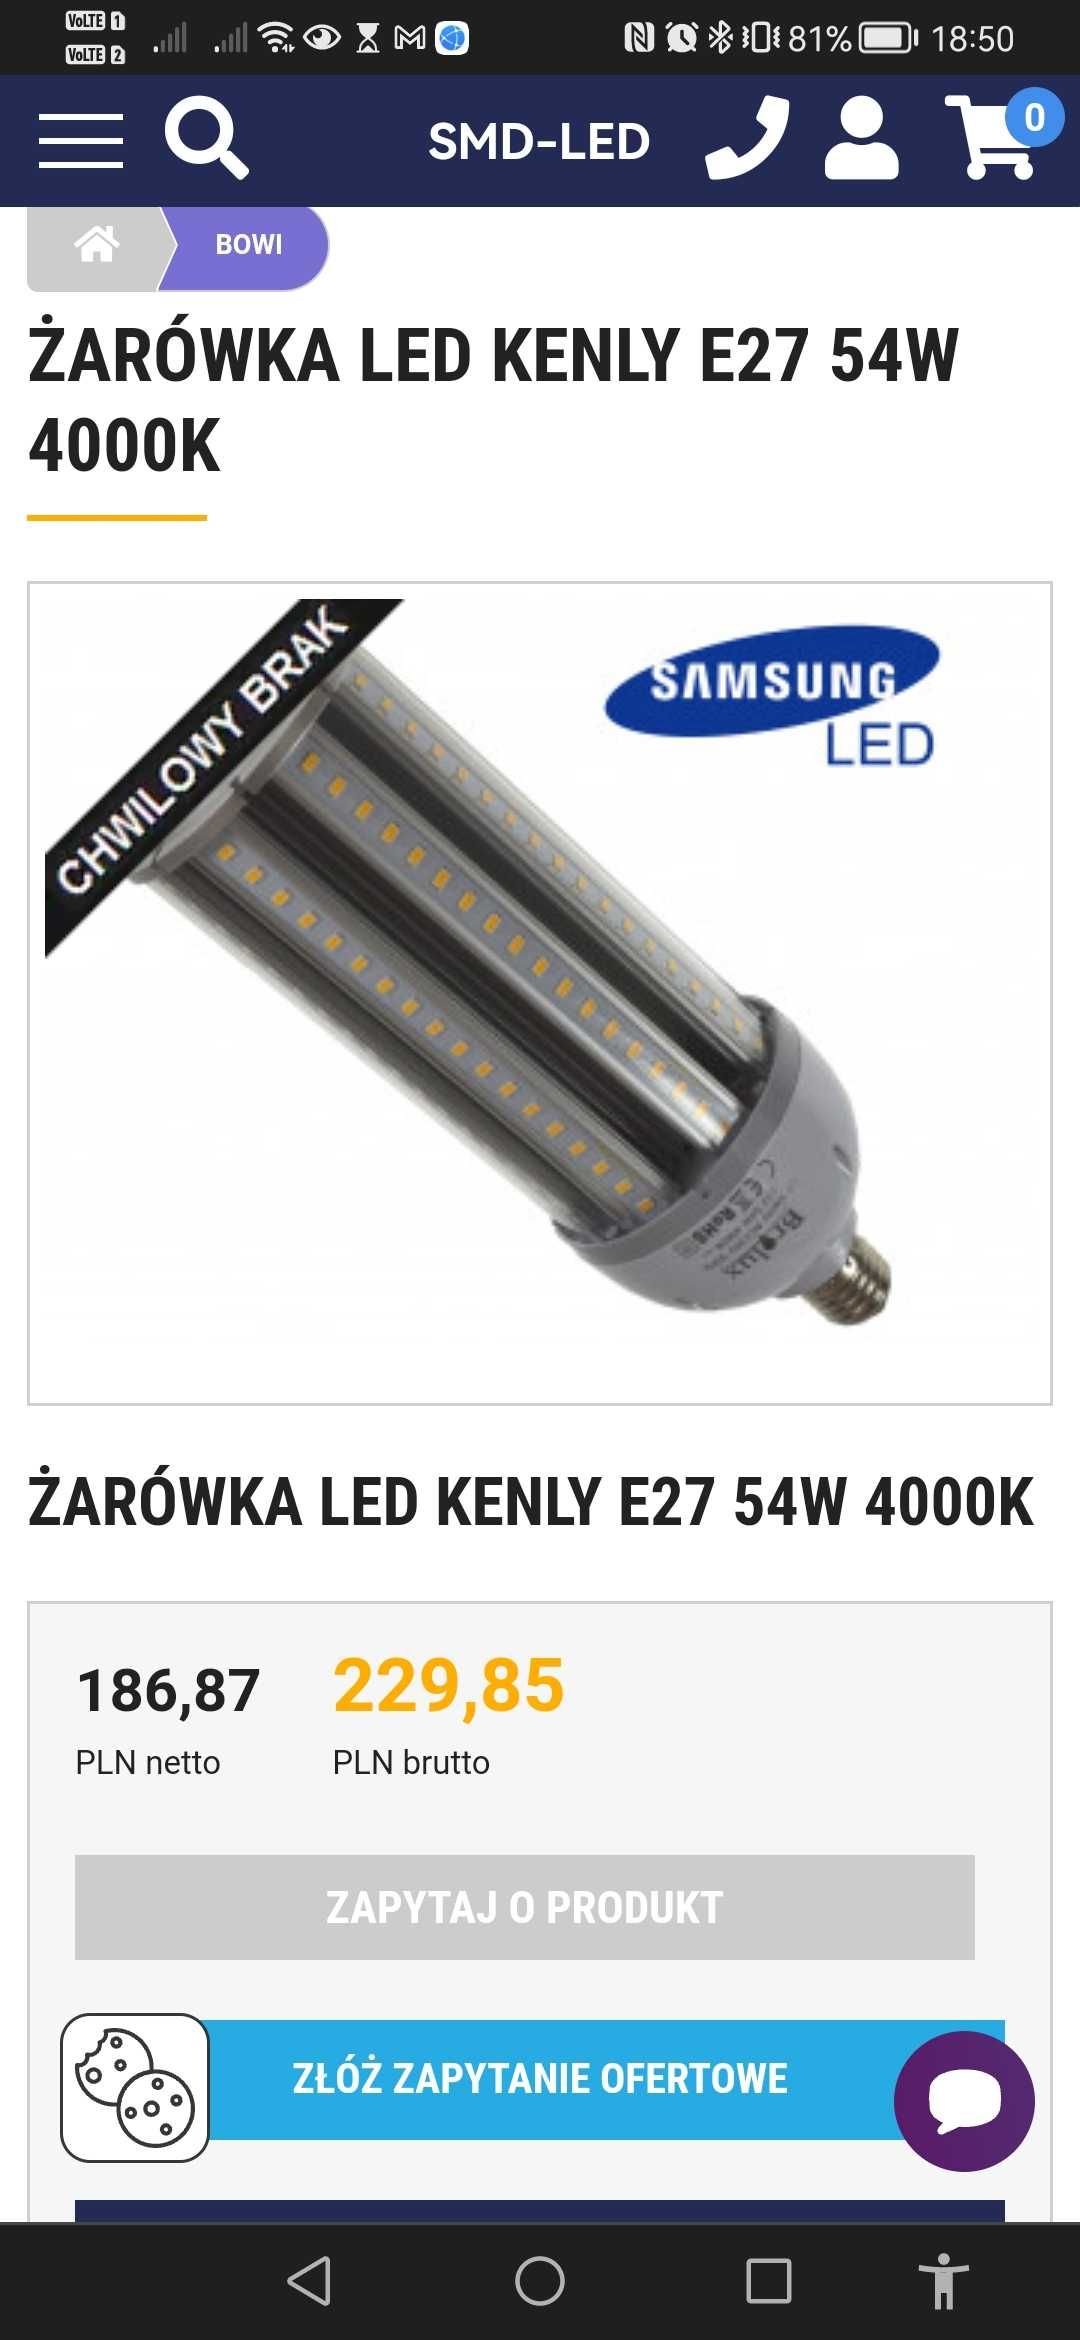 Żarówka LED kenly E27 54W Samsung nowa